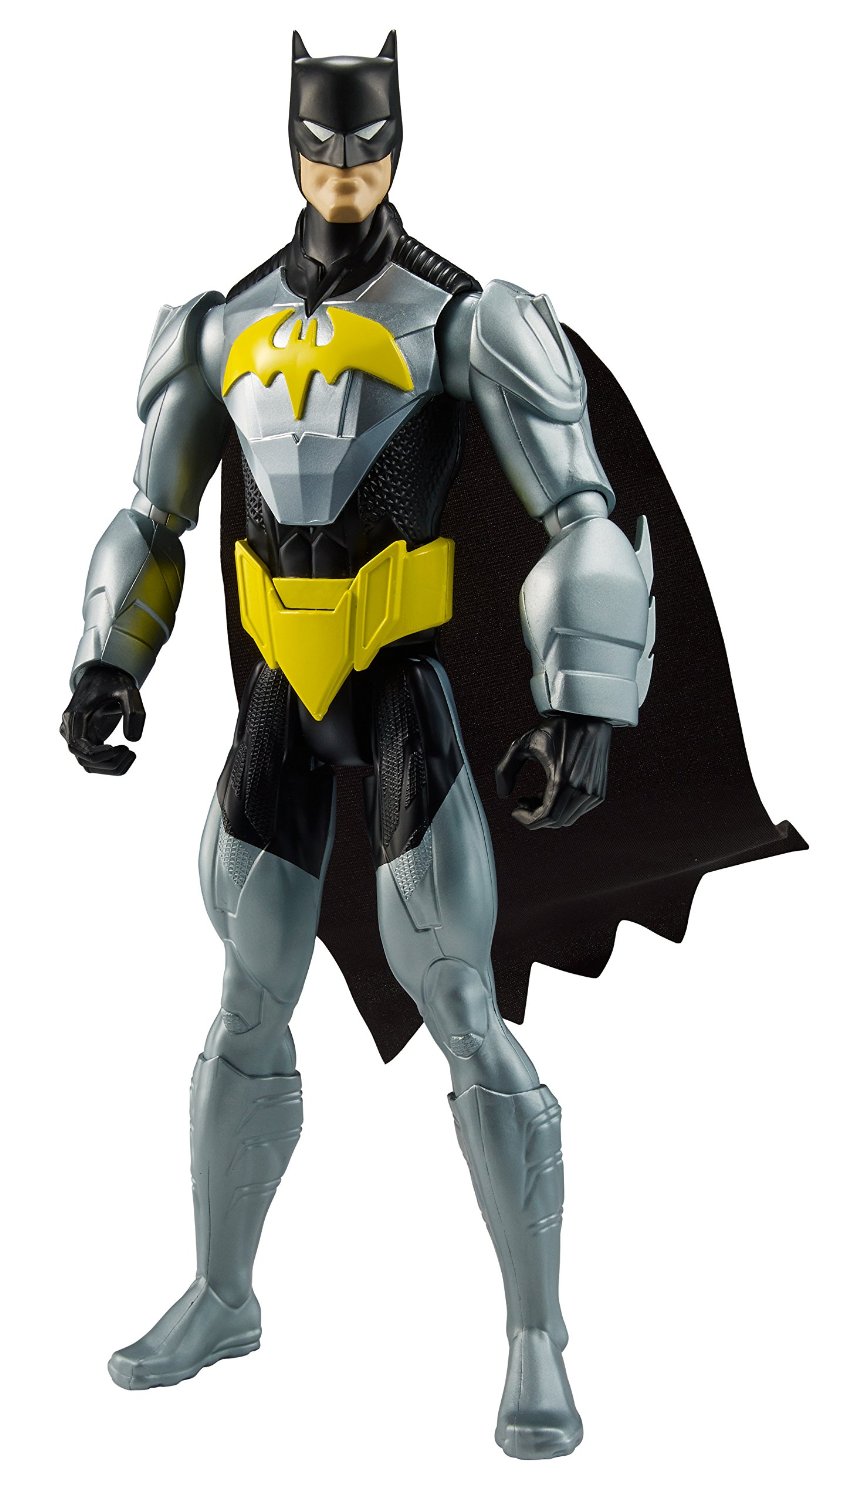 DC Comics 12″ Armor Batman Figure – Just $4.86!